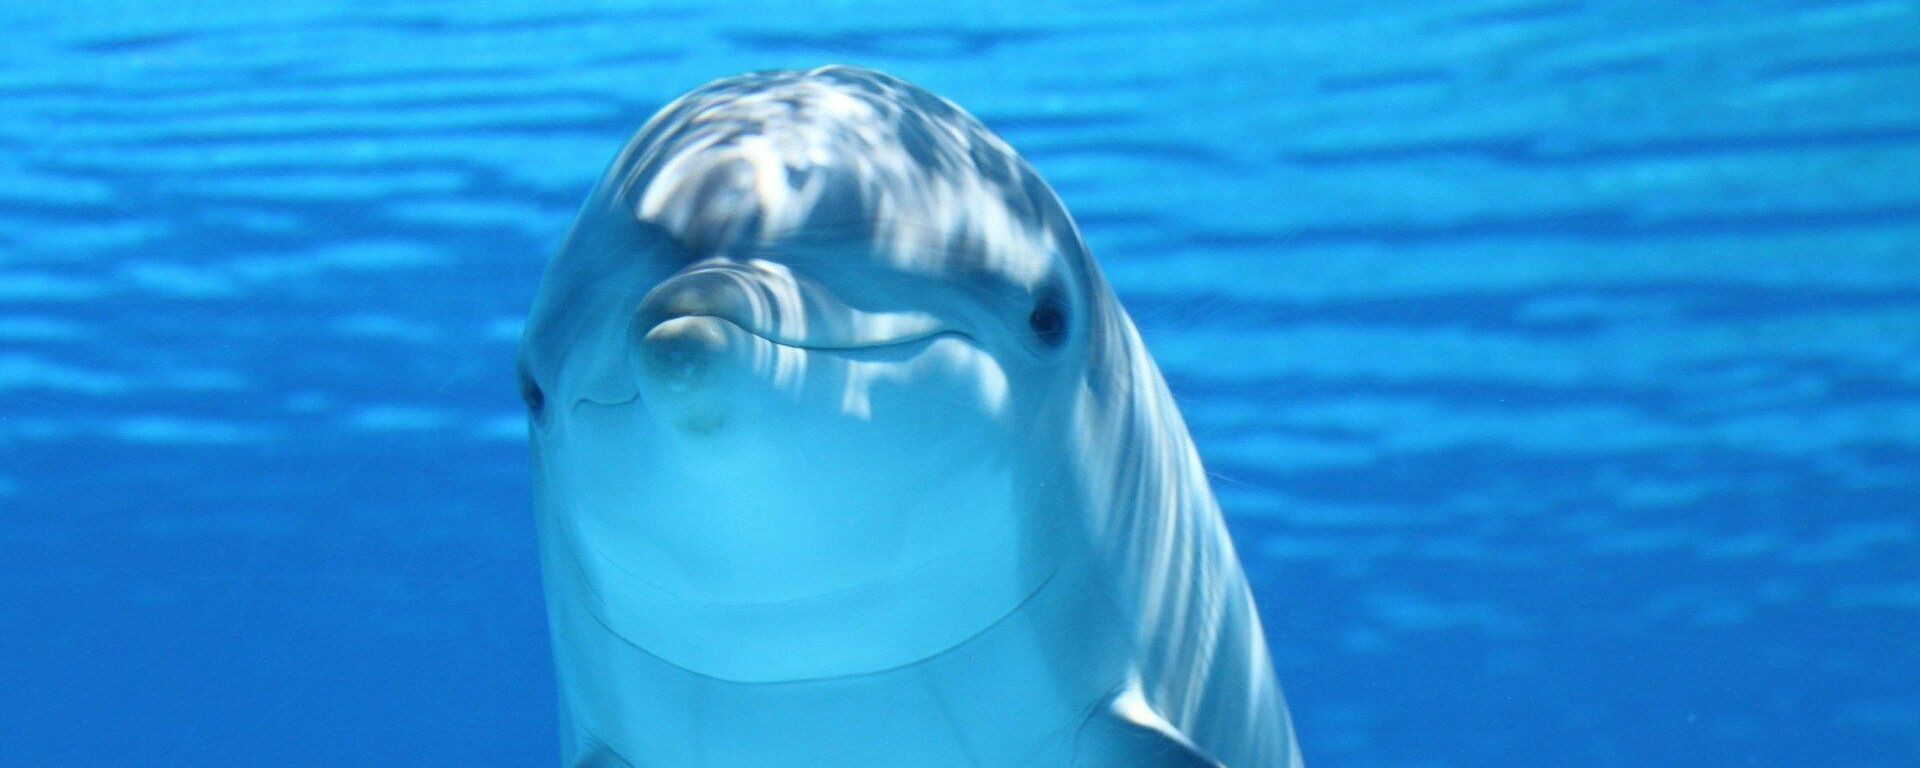 Foto referencial de un delfín - Sputnik Mundo, 1920, 24.02.2021